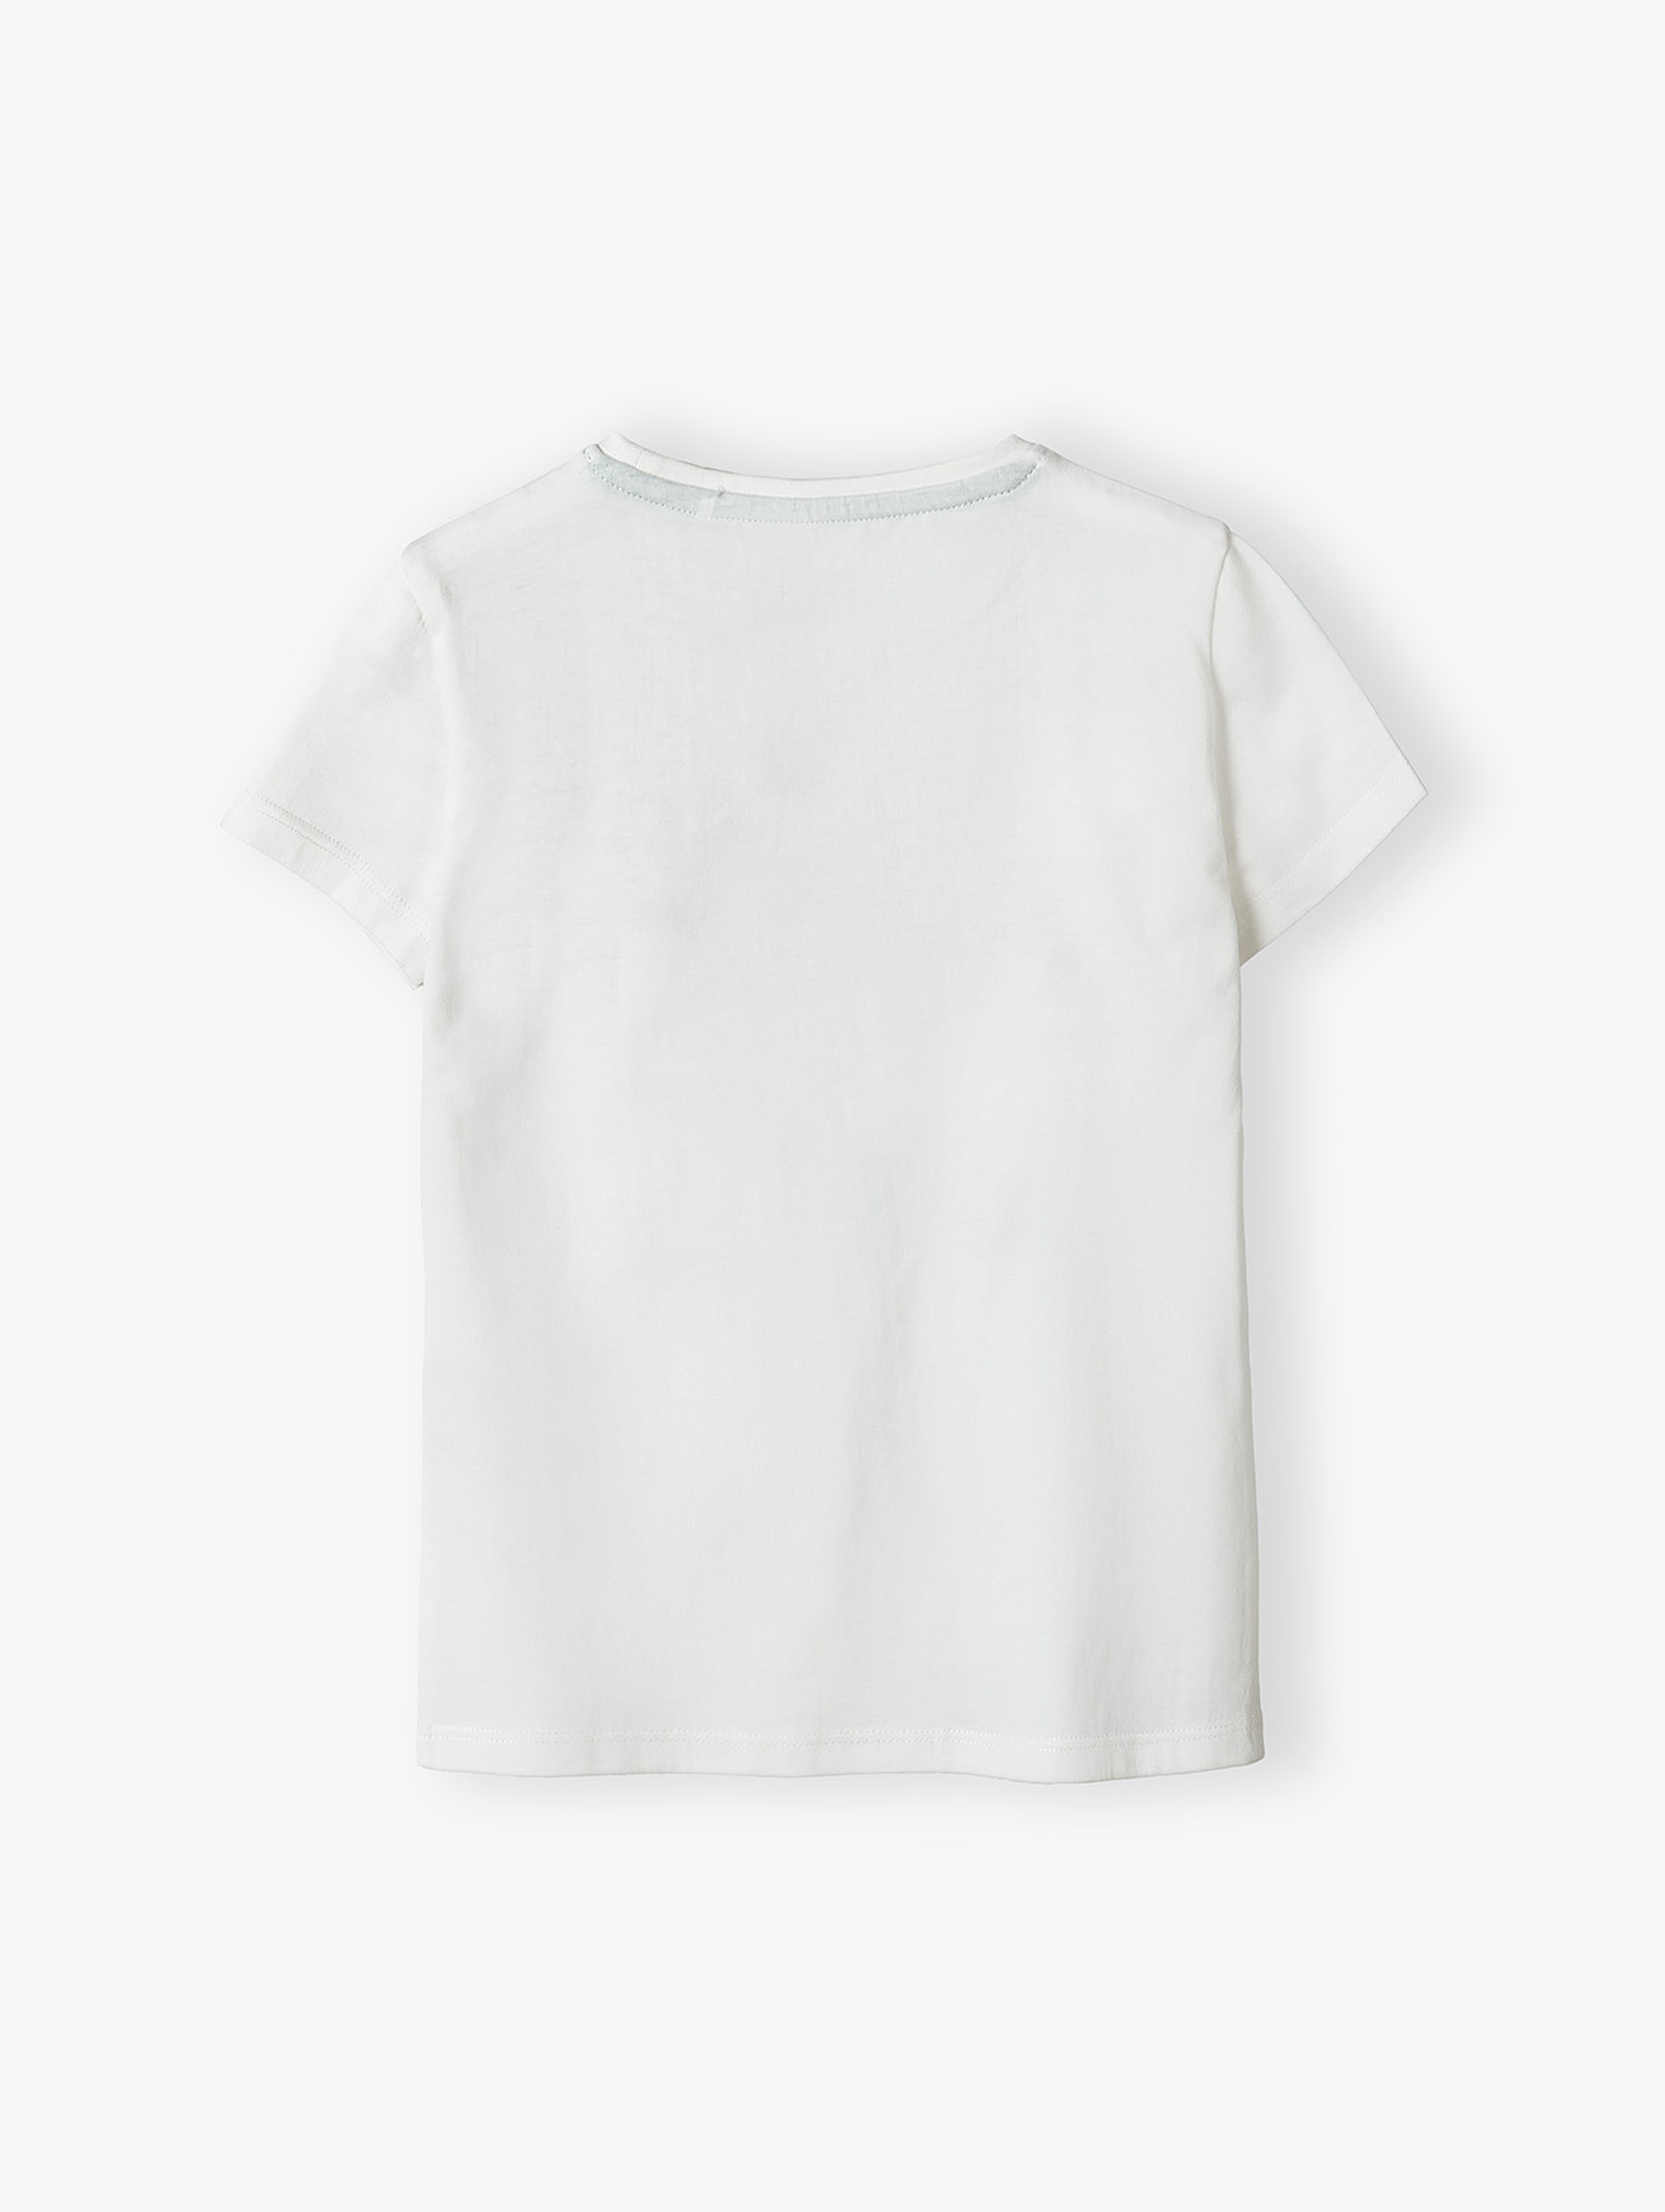 Biały t-shirt bawełniany dla dziewczynki w kwiatki 3D